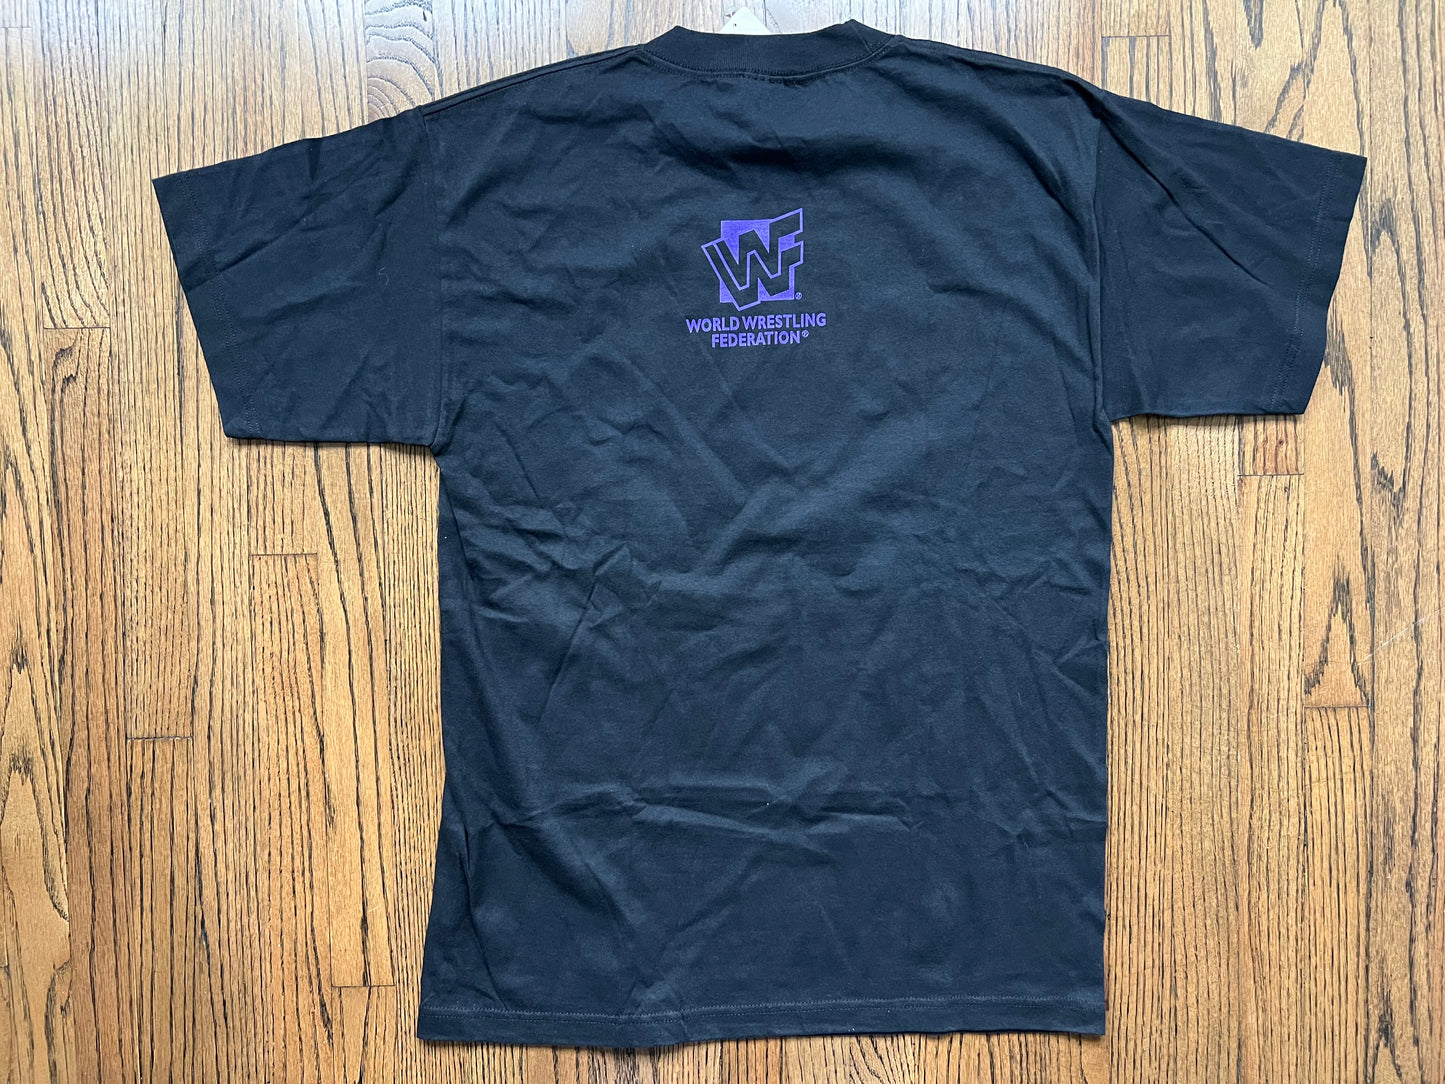 1997 WWF Undertaker shirt with original price tag